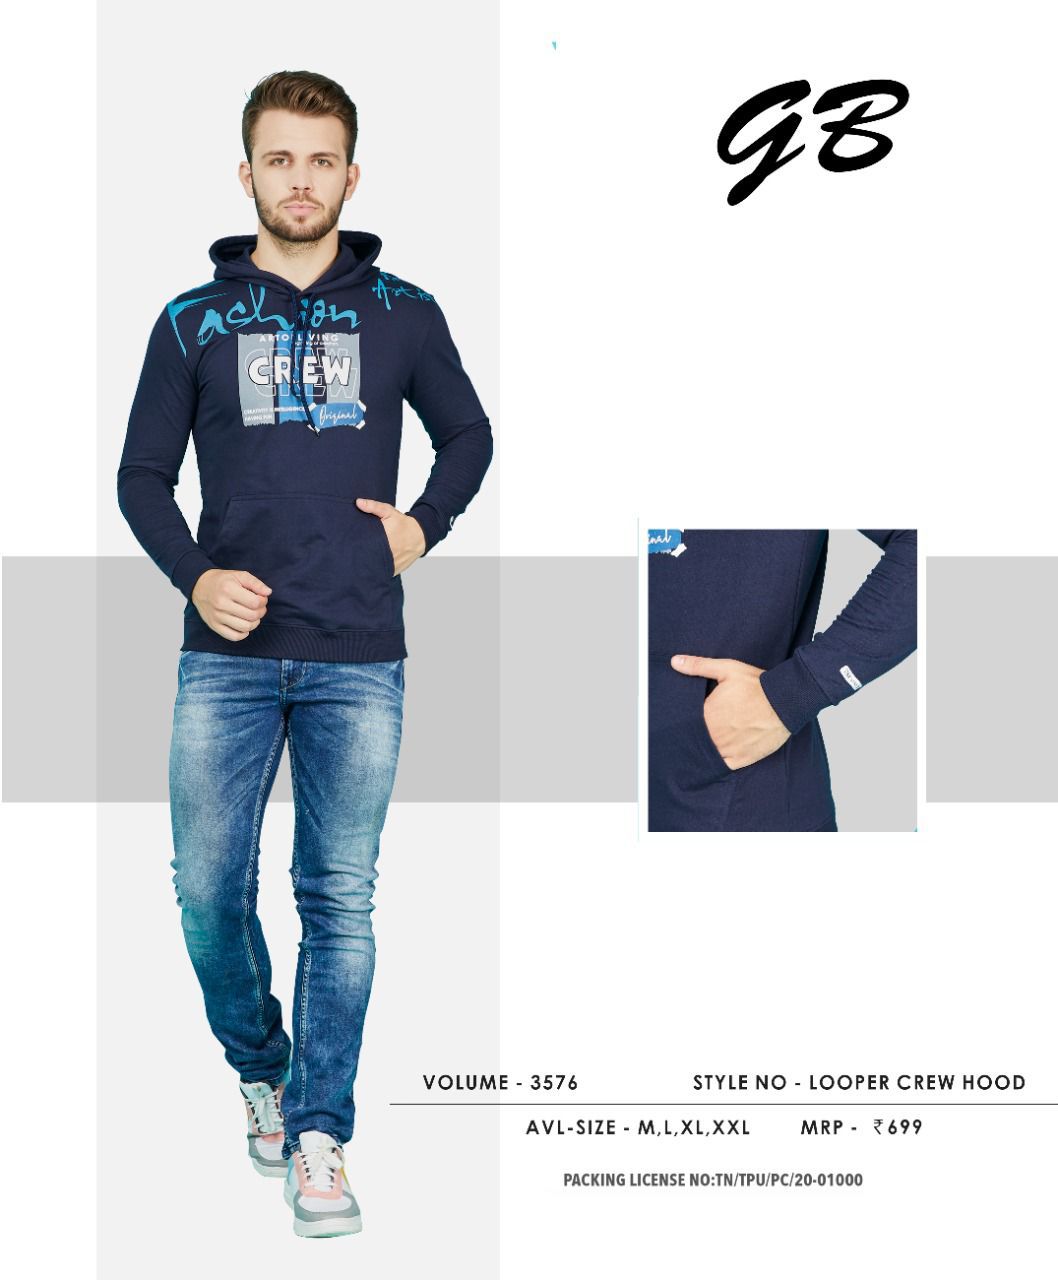 Gb Vol 3576 Full Sleeves Latest Mens Tshirts Catalog Lowest Price